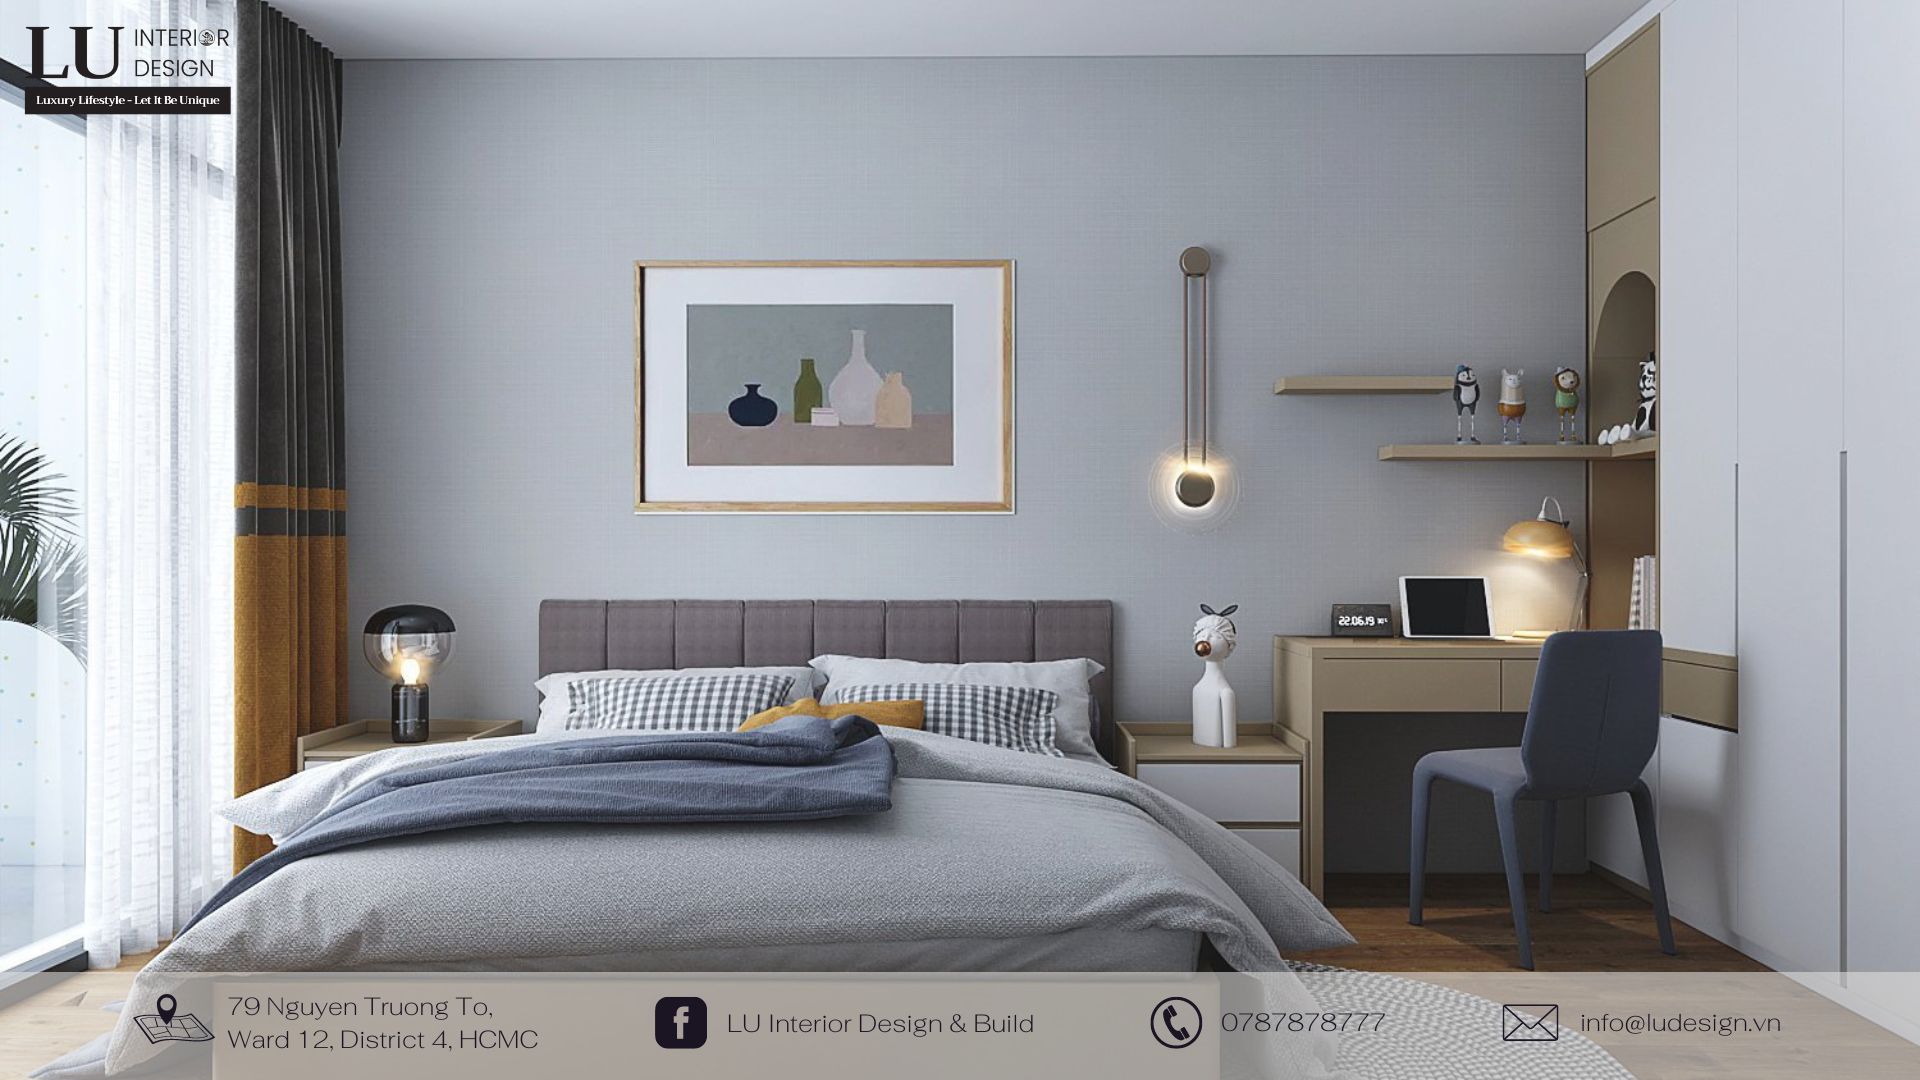 Nội thất phòng ngủ thiết kế cùng tone màu lạnh mang đến cảm giác dịu dàng, dễ chịu | Dự án căn hộ Petro Landmark - LU Design thực hiện.